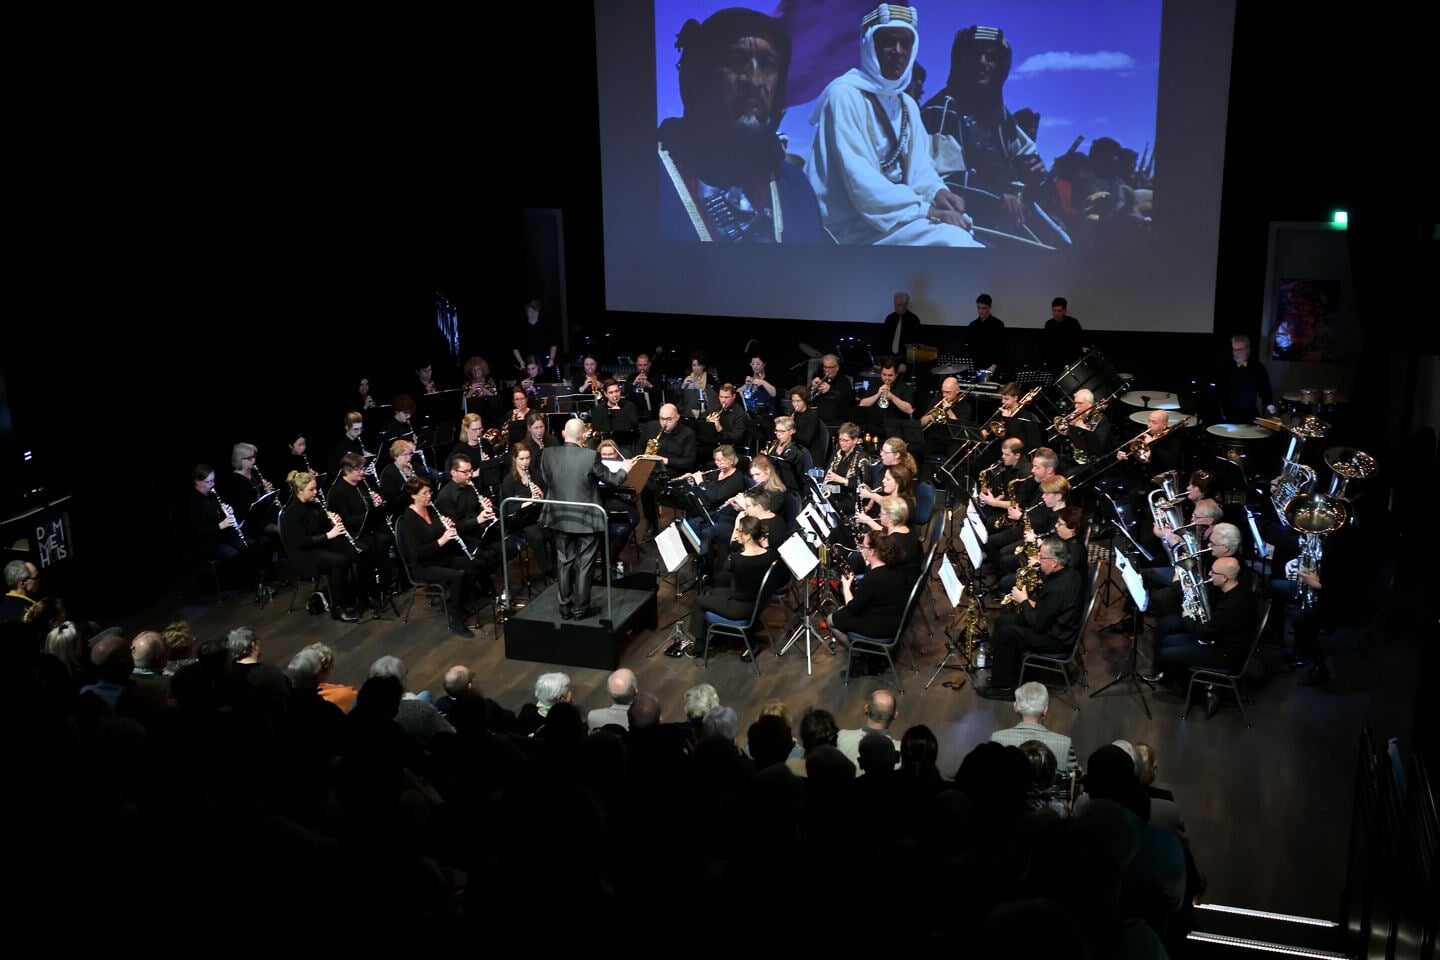 Filmconcert Harmonieorkest spat muzikaal van het scherm